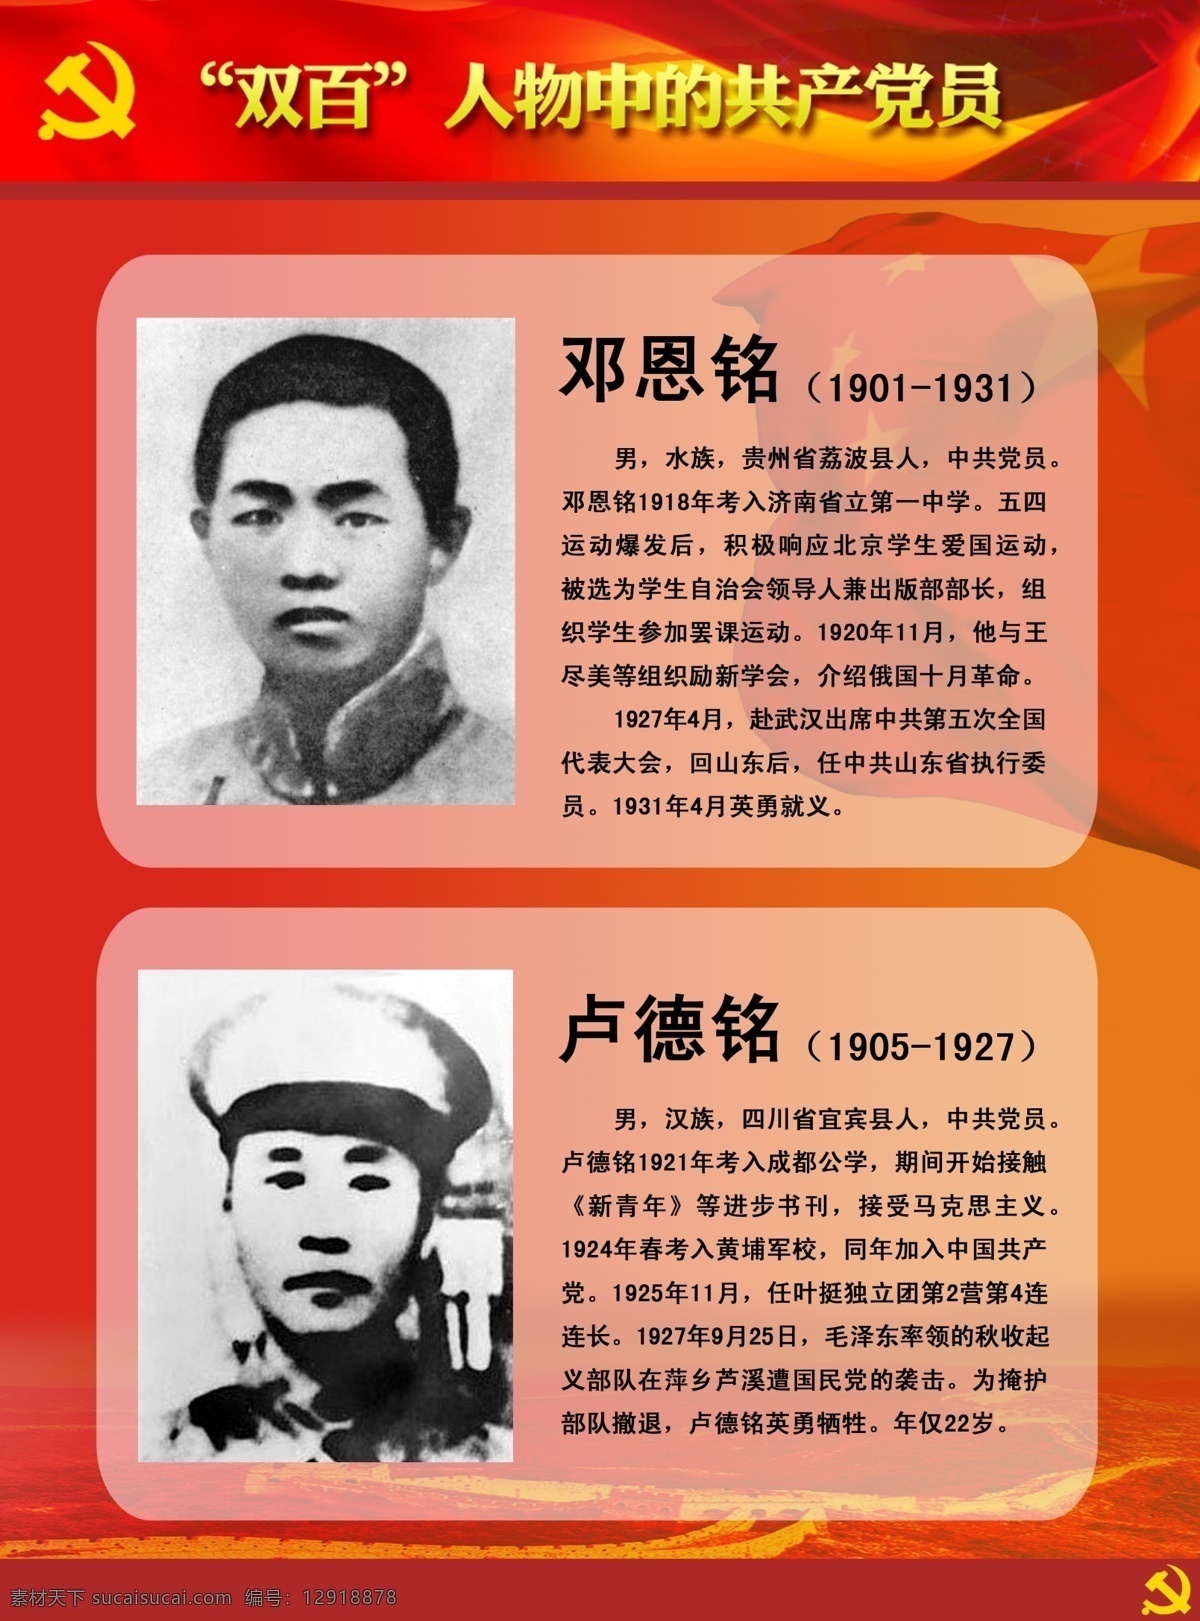 双百人物展板 双百 人物 中 共产党员 邓恩铭 卢德铭 英雄人物 牺牲 英雄 展板模板 广告设计模板 源文件